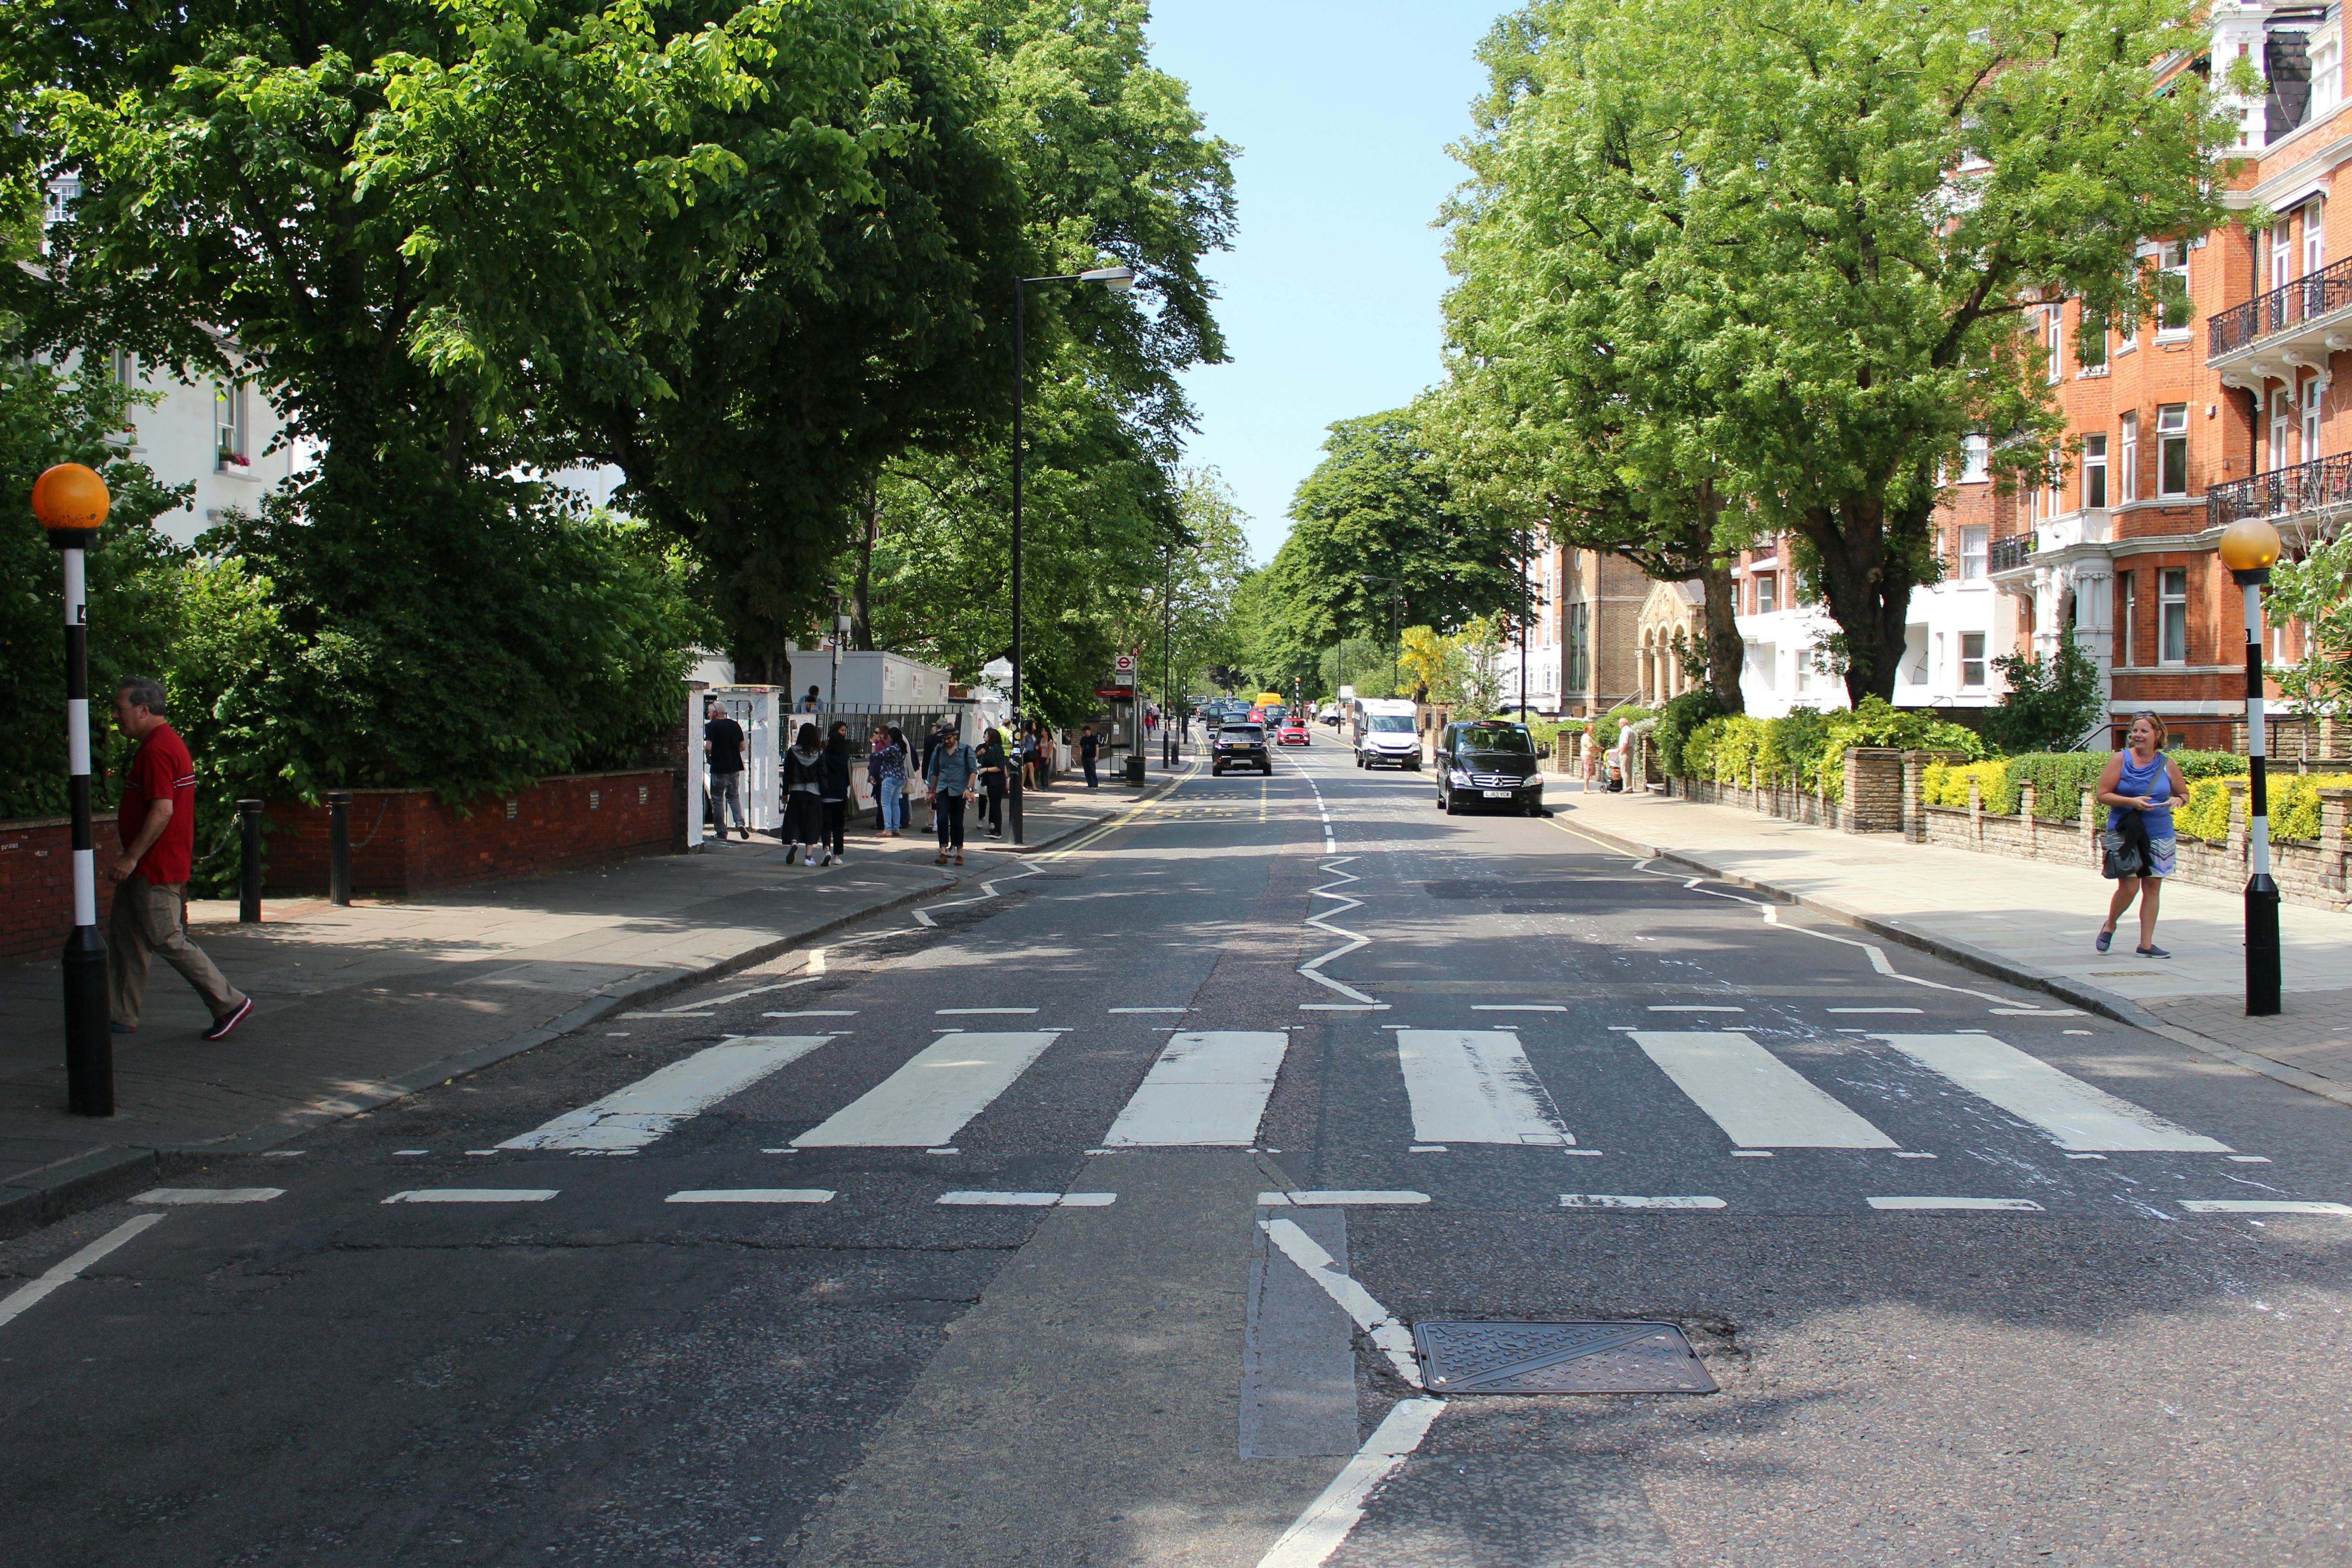 Excursão mágica mágica dos Beatles em Marylebone e Abbey Road